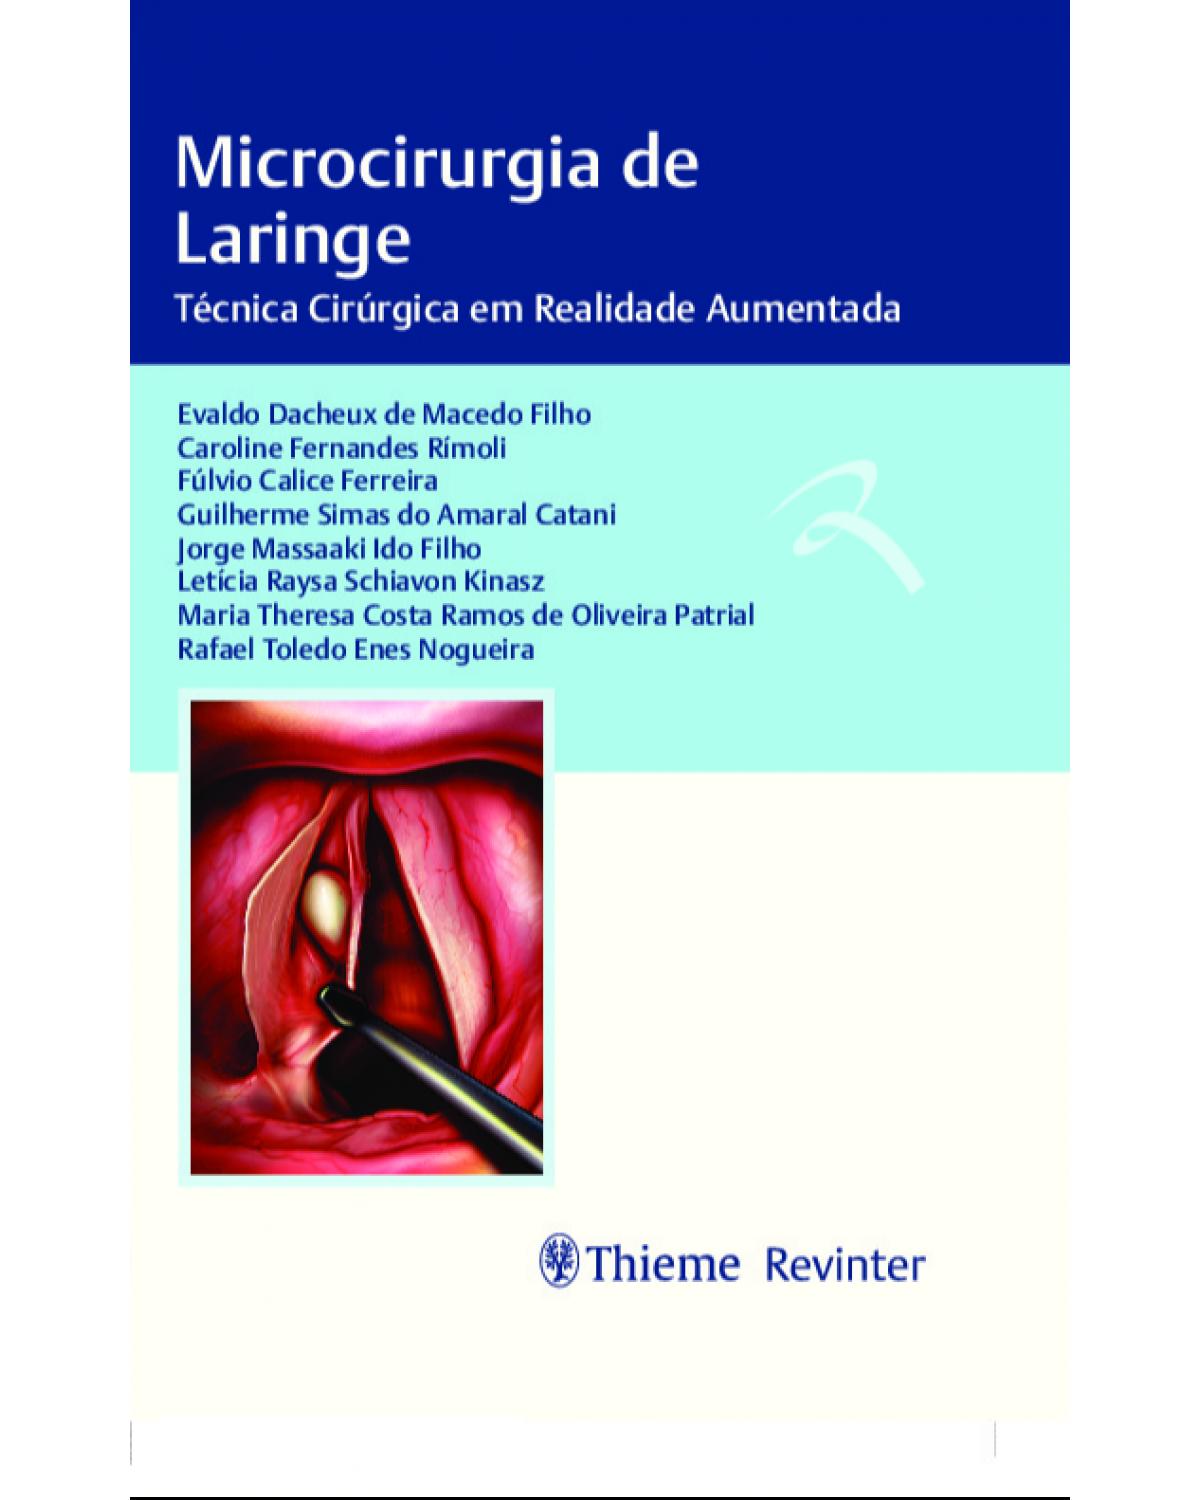 Microcirurgia de laringe - técnica cirúrgica em realidade aumentada - 1ª Edição | 2020